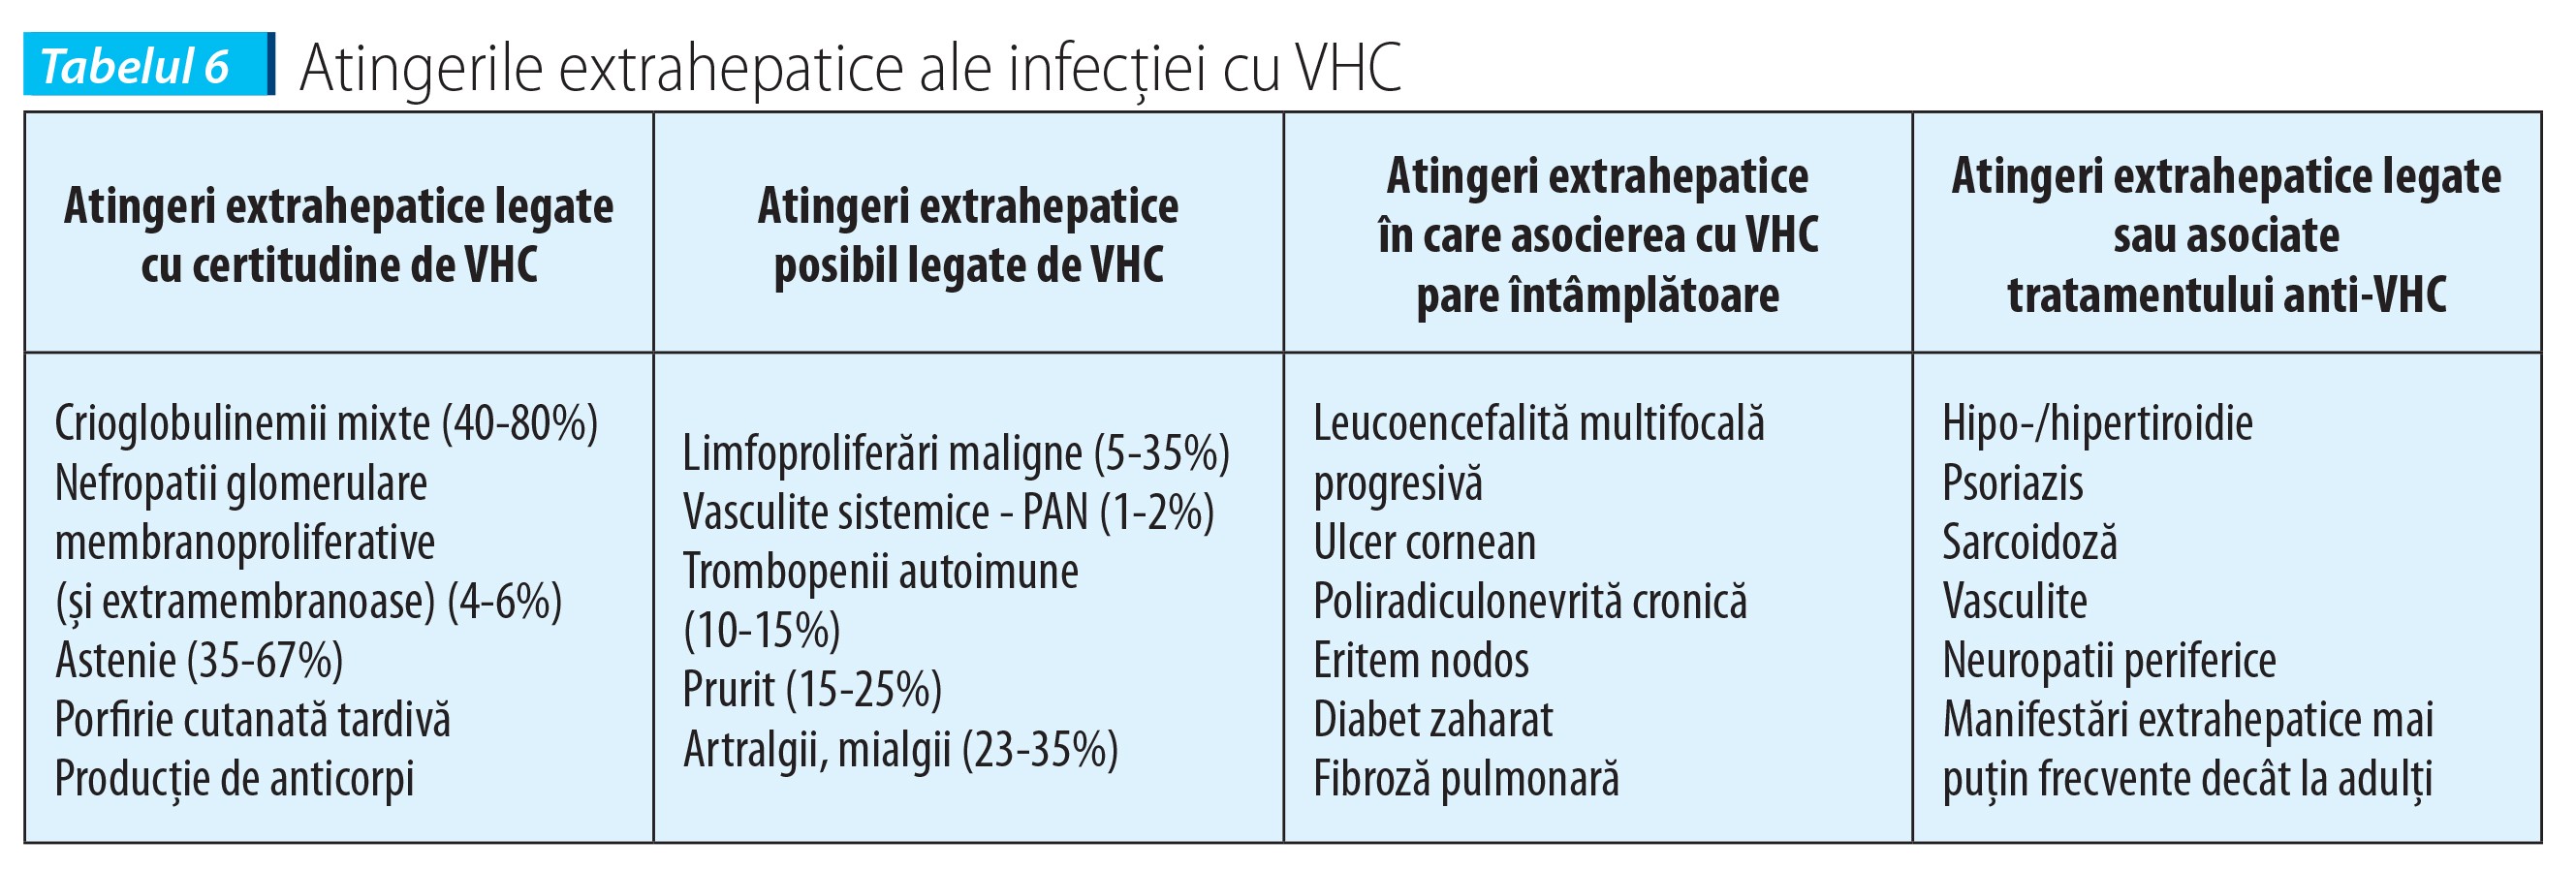 Tabelul 6 Atingerile extrahepatice ale infecției cu VHC